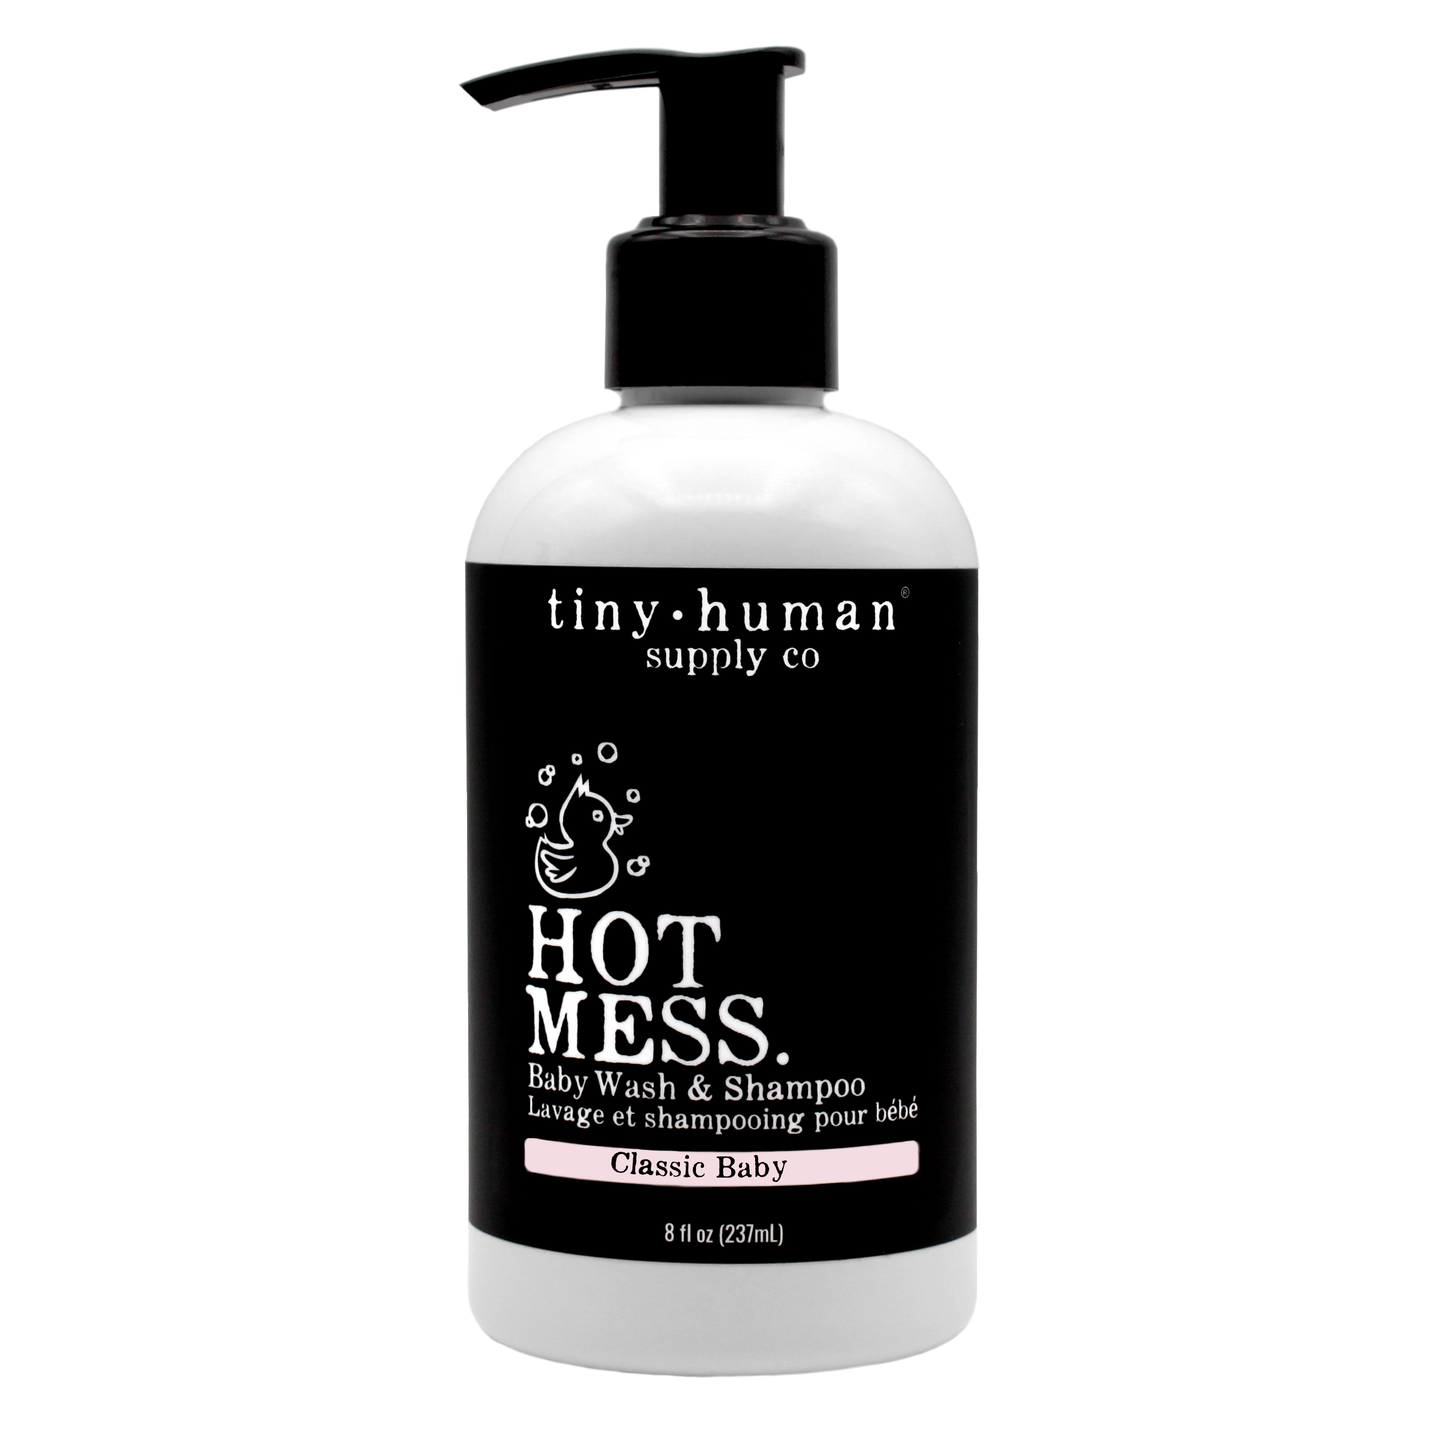 tiny human supply co. hot mess baby wash & shampoo classic baby